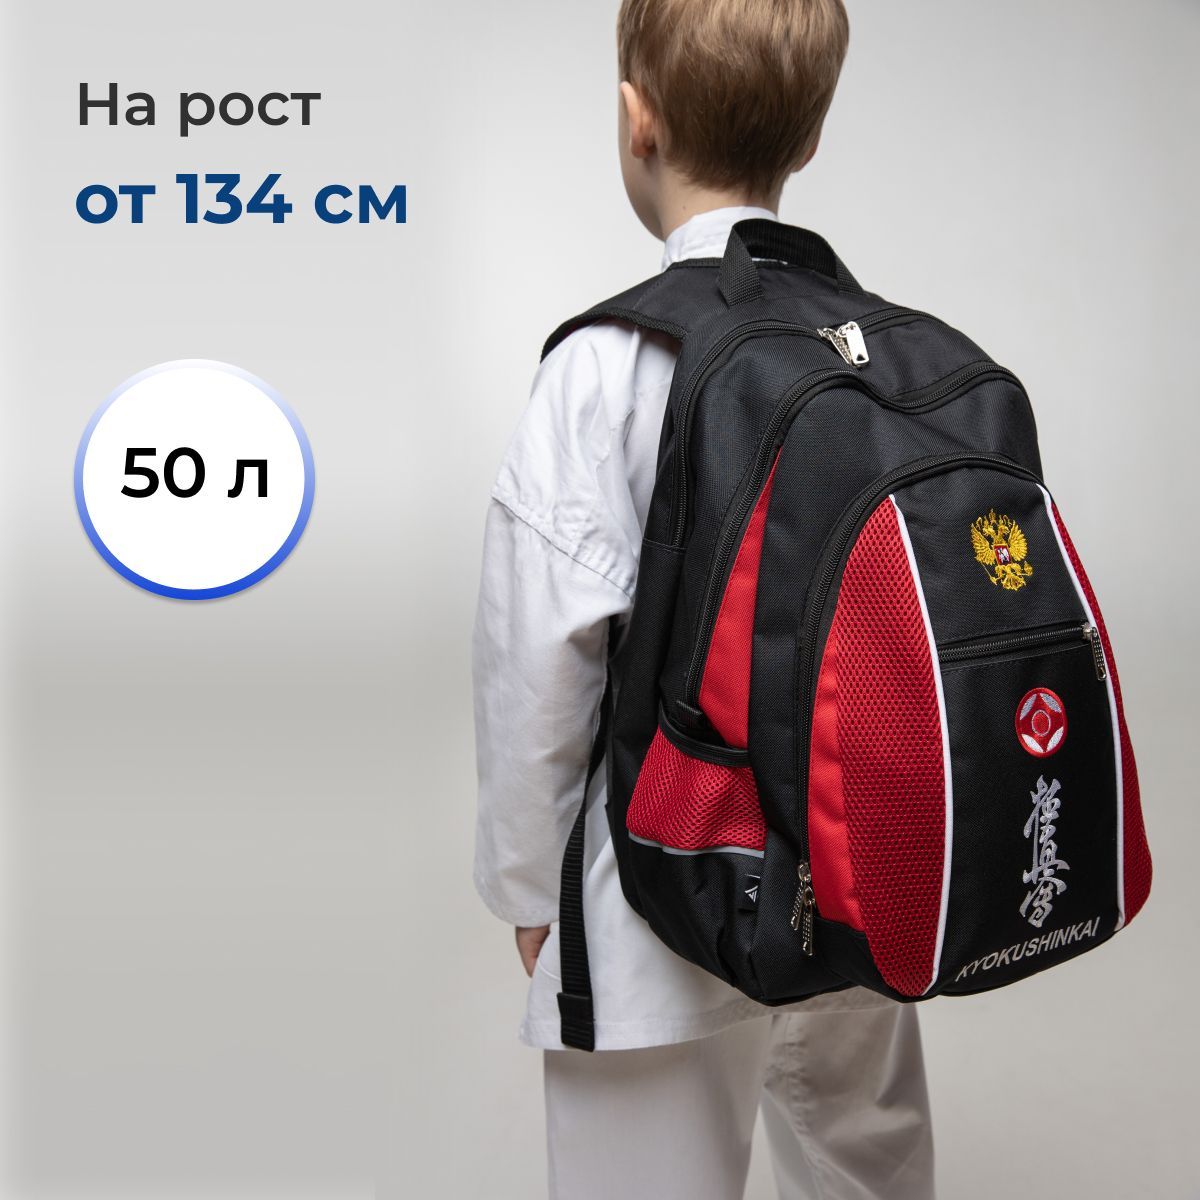 Спортивный рюкзак сумка для карате киокушинкай VincoBag с вышивкой каратэ 50 литров